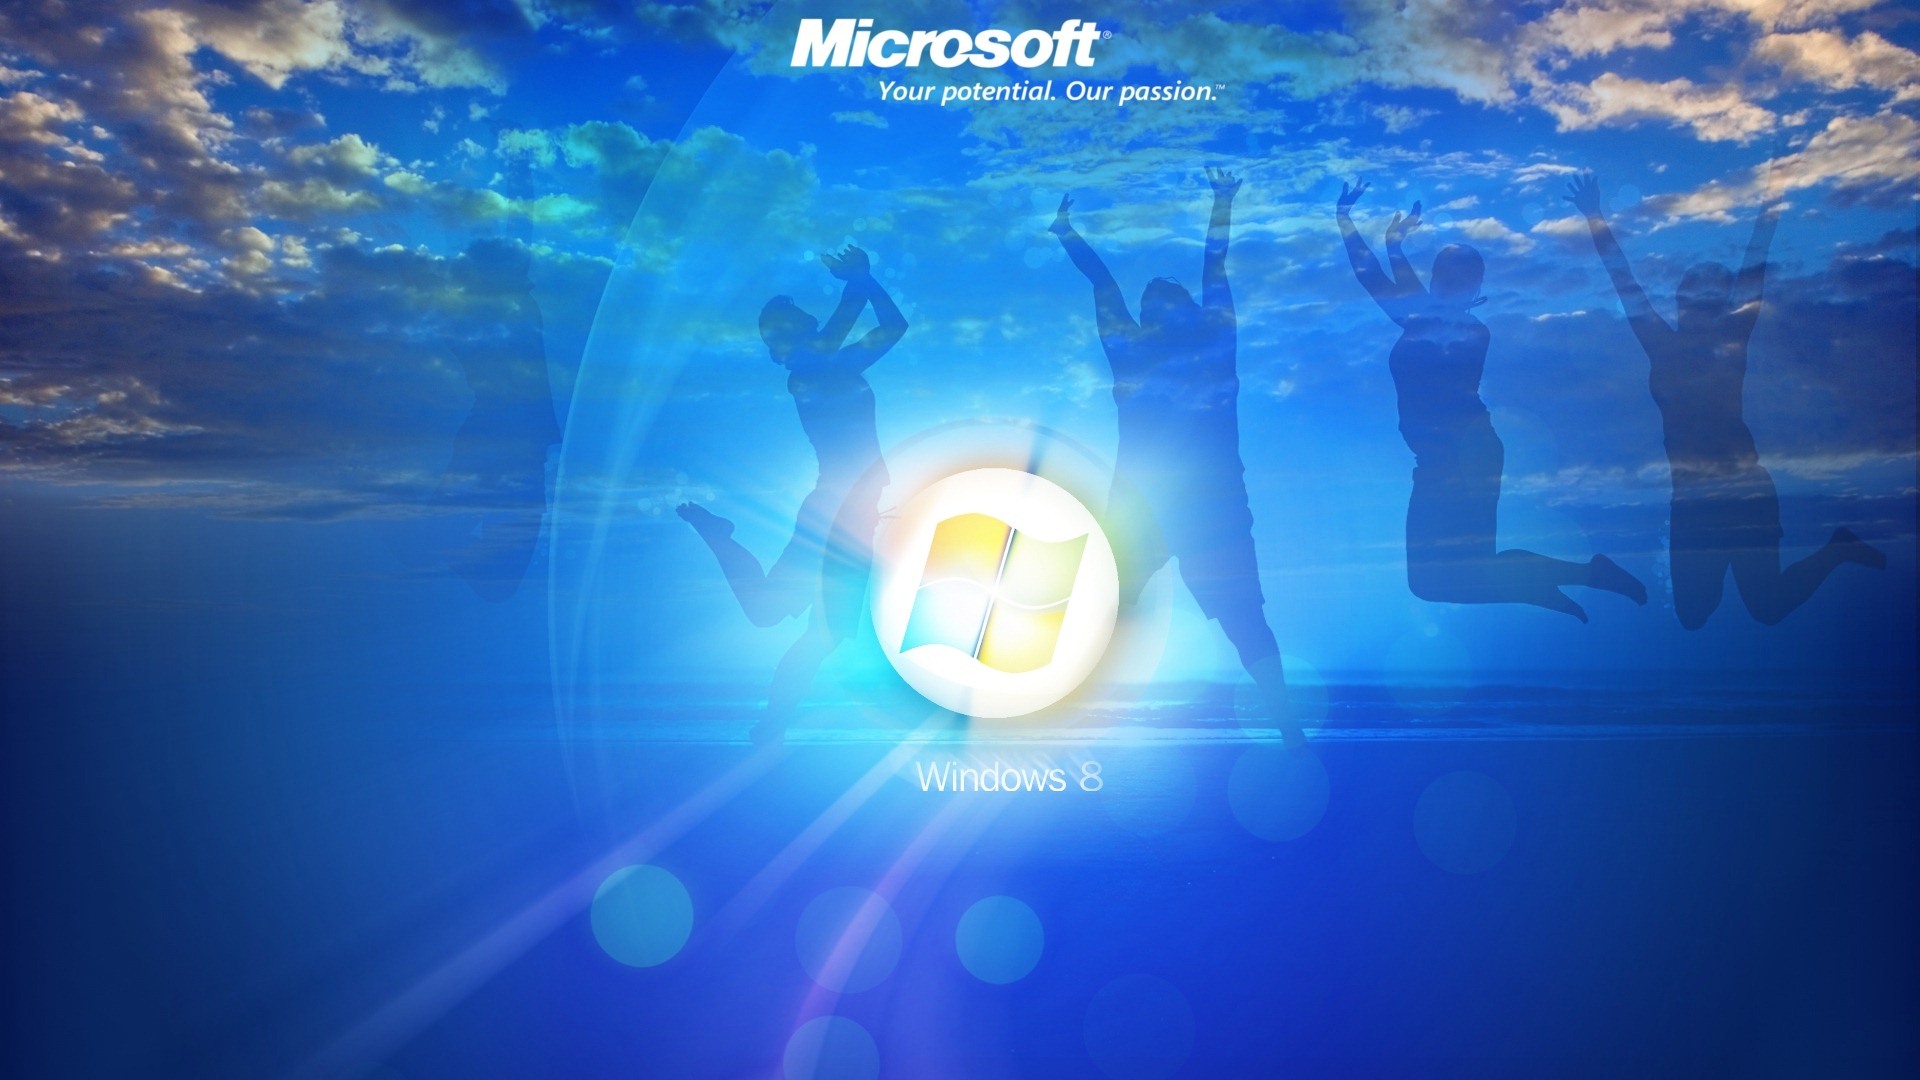 Windows 8 theme wallpaper (1) #4 - 1920x1080